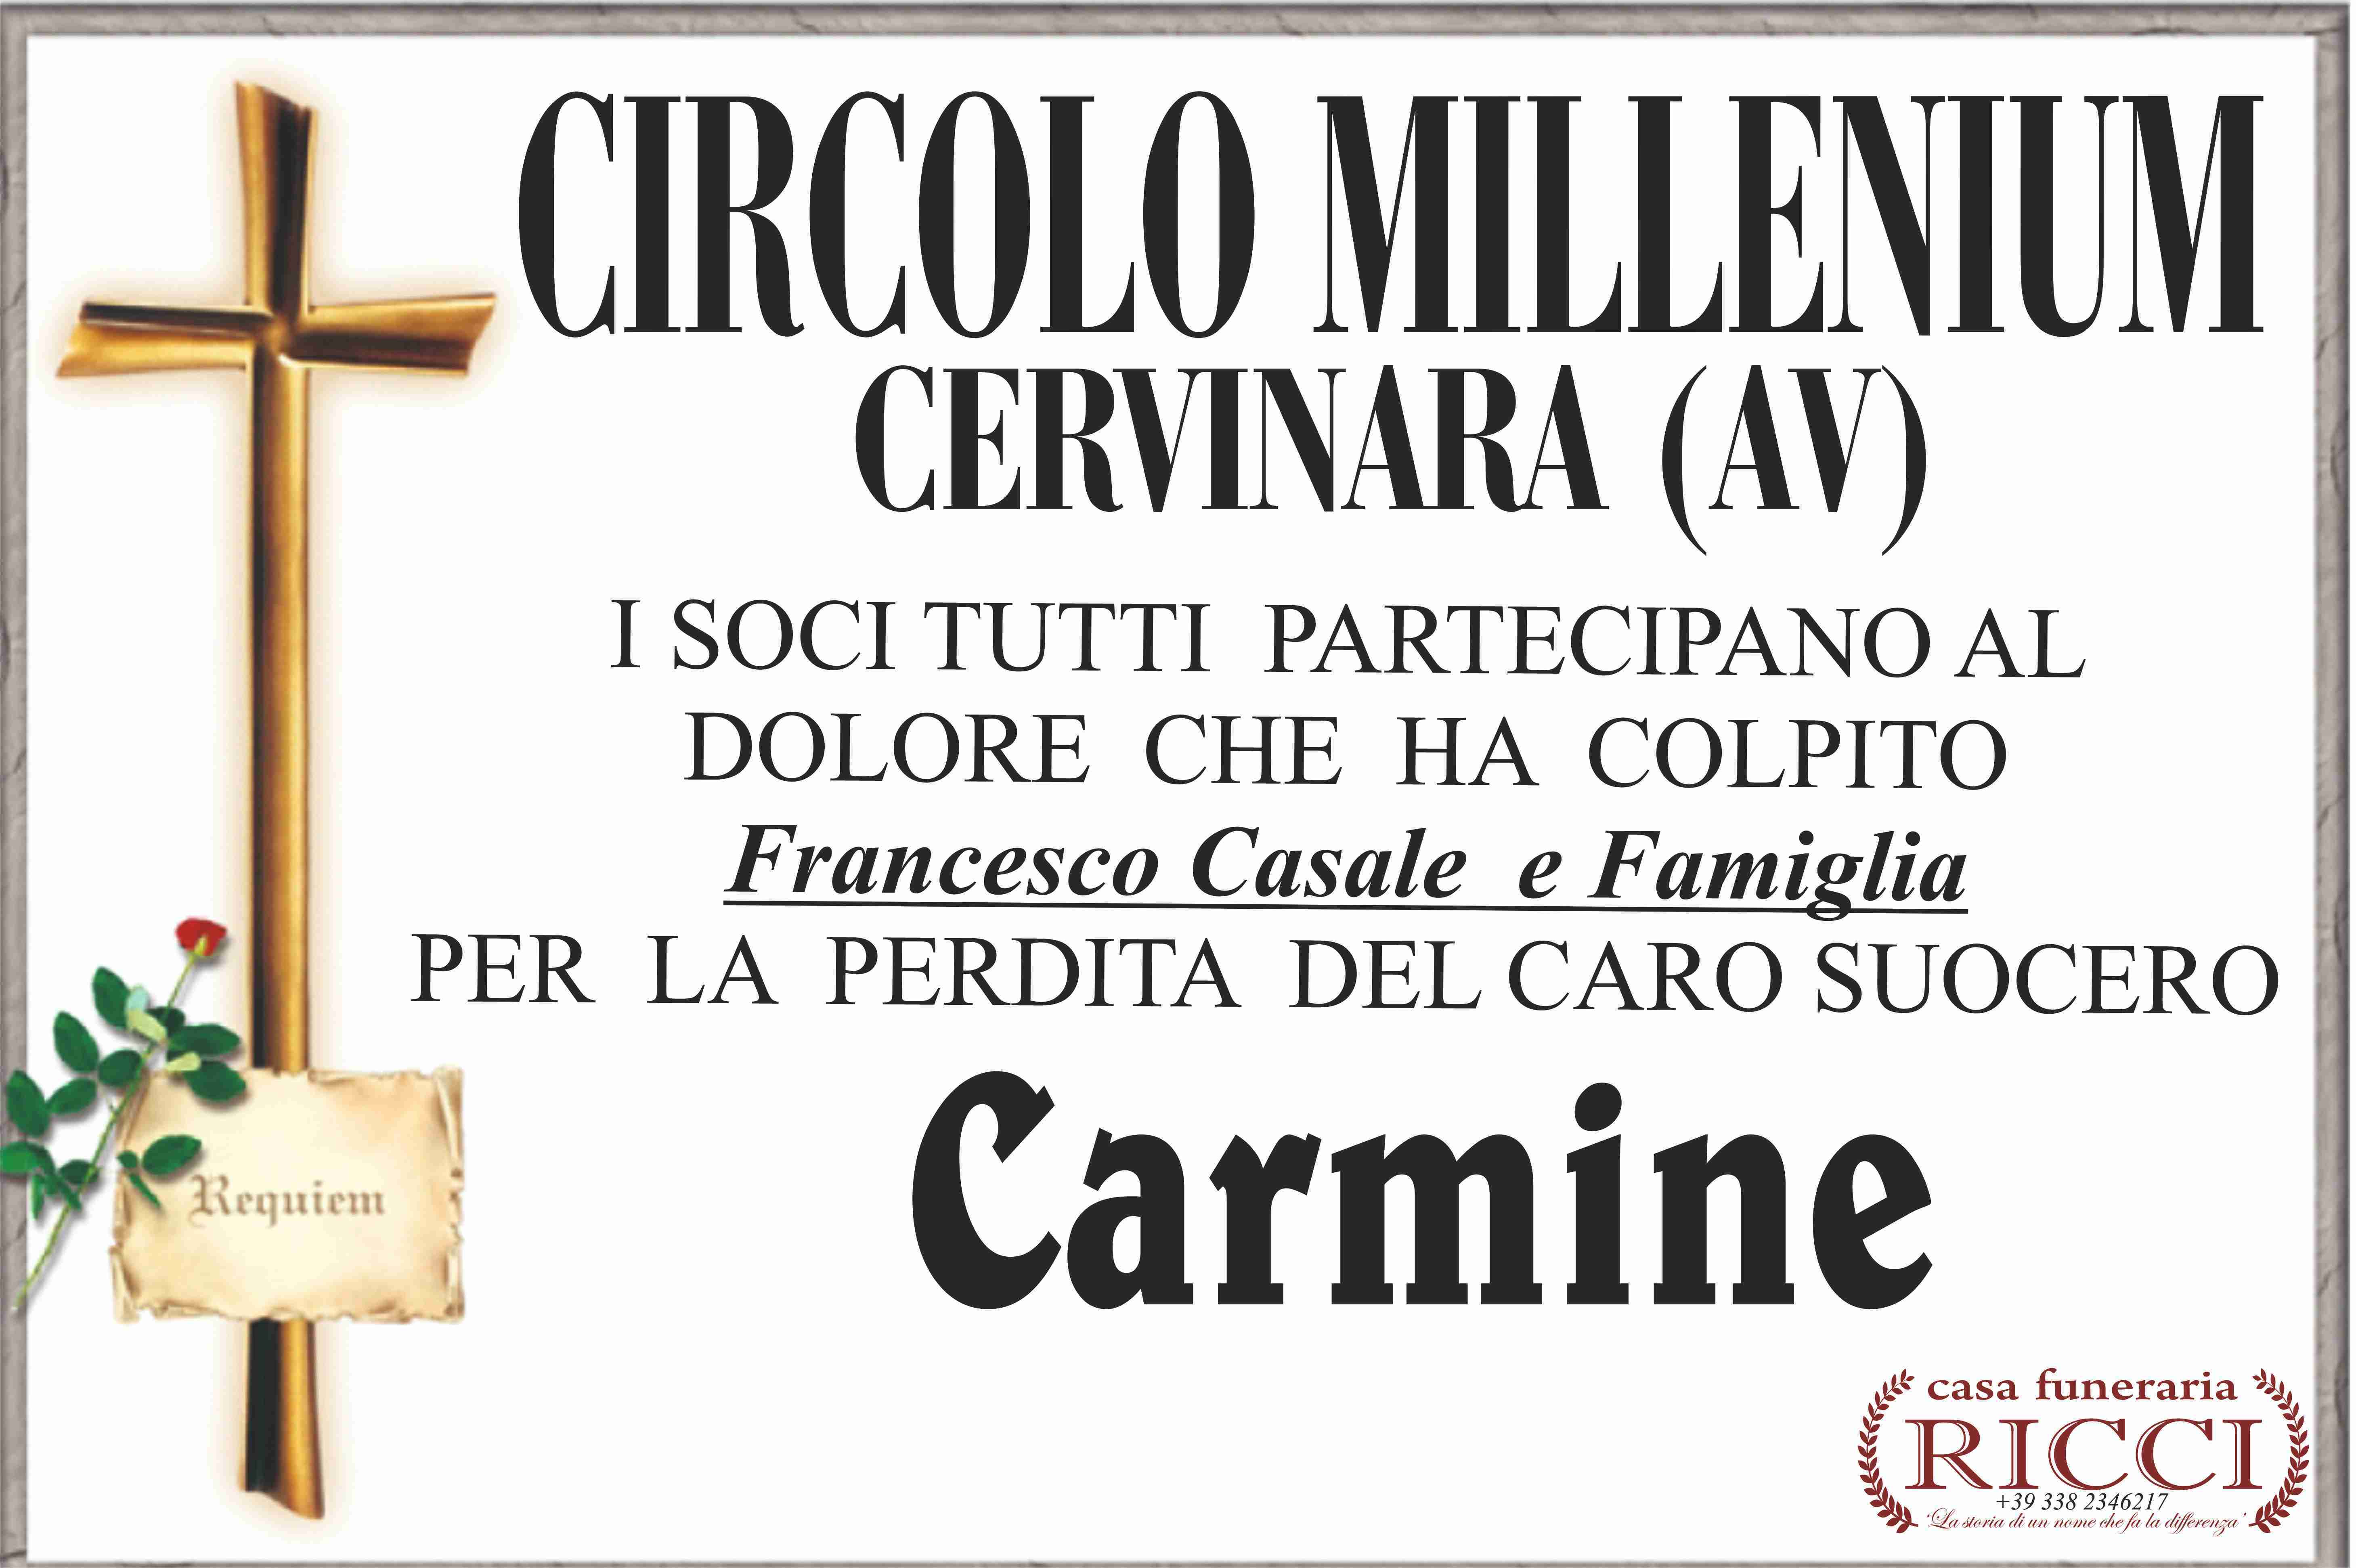 Carmine Sacco